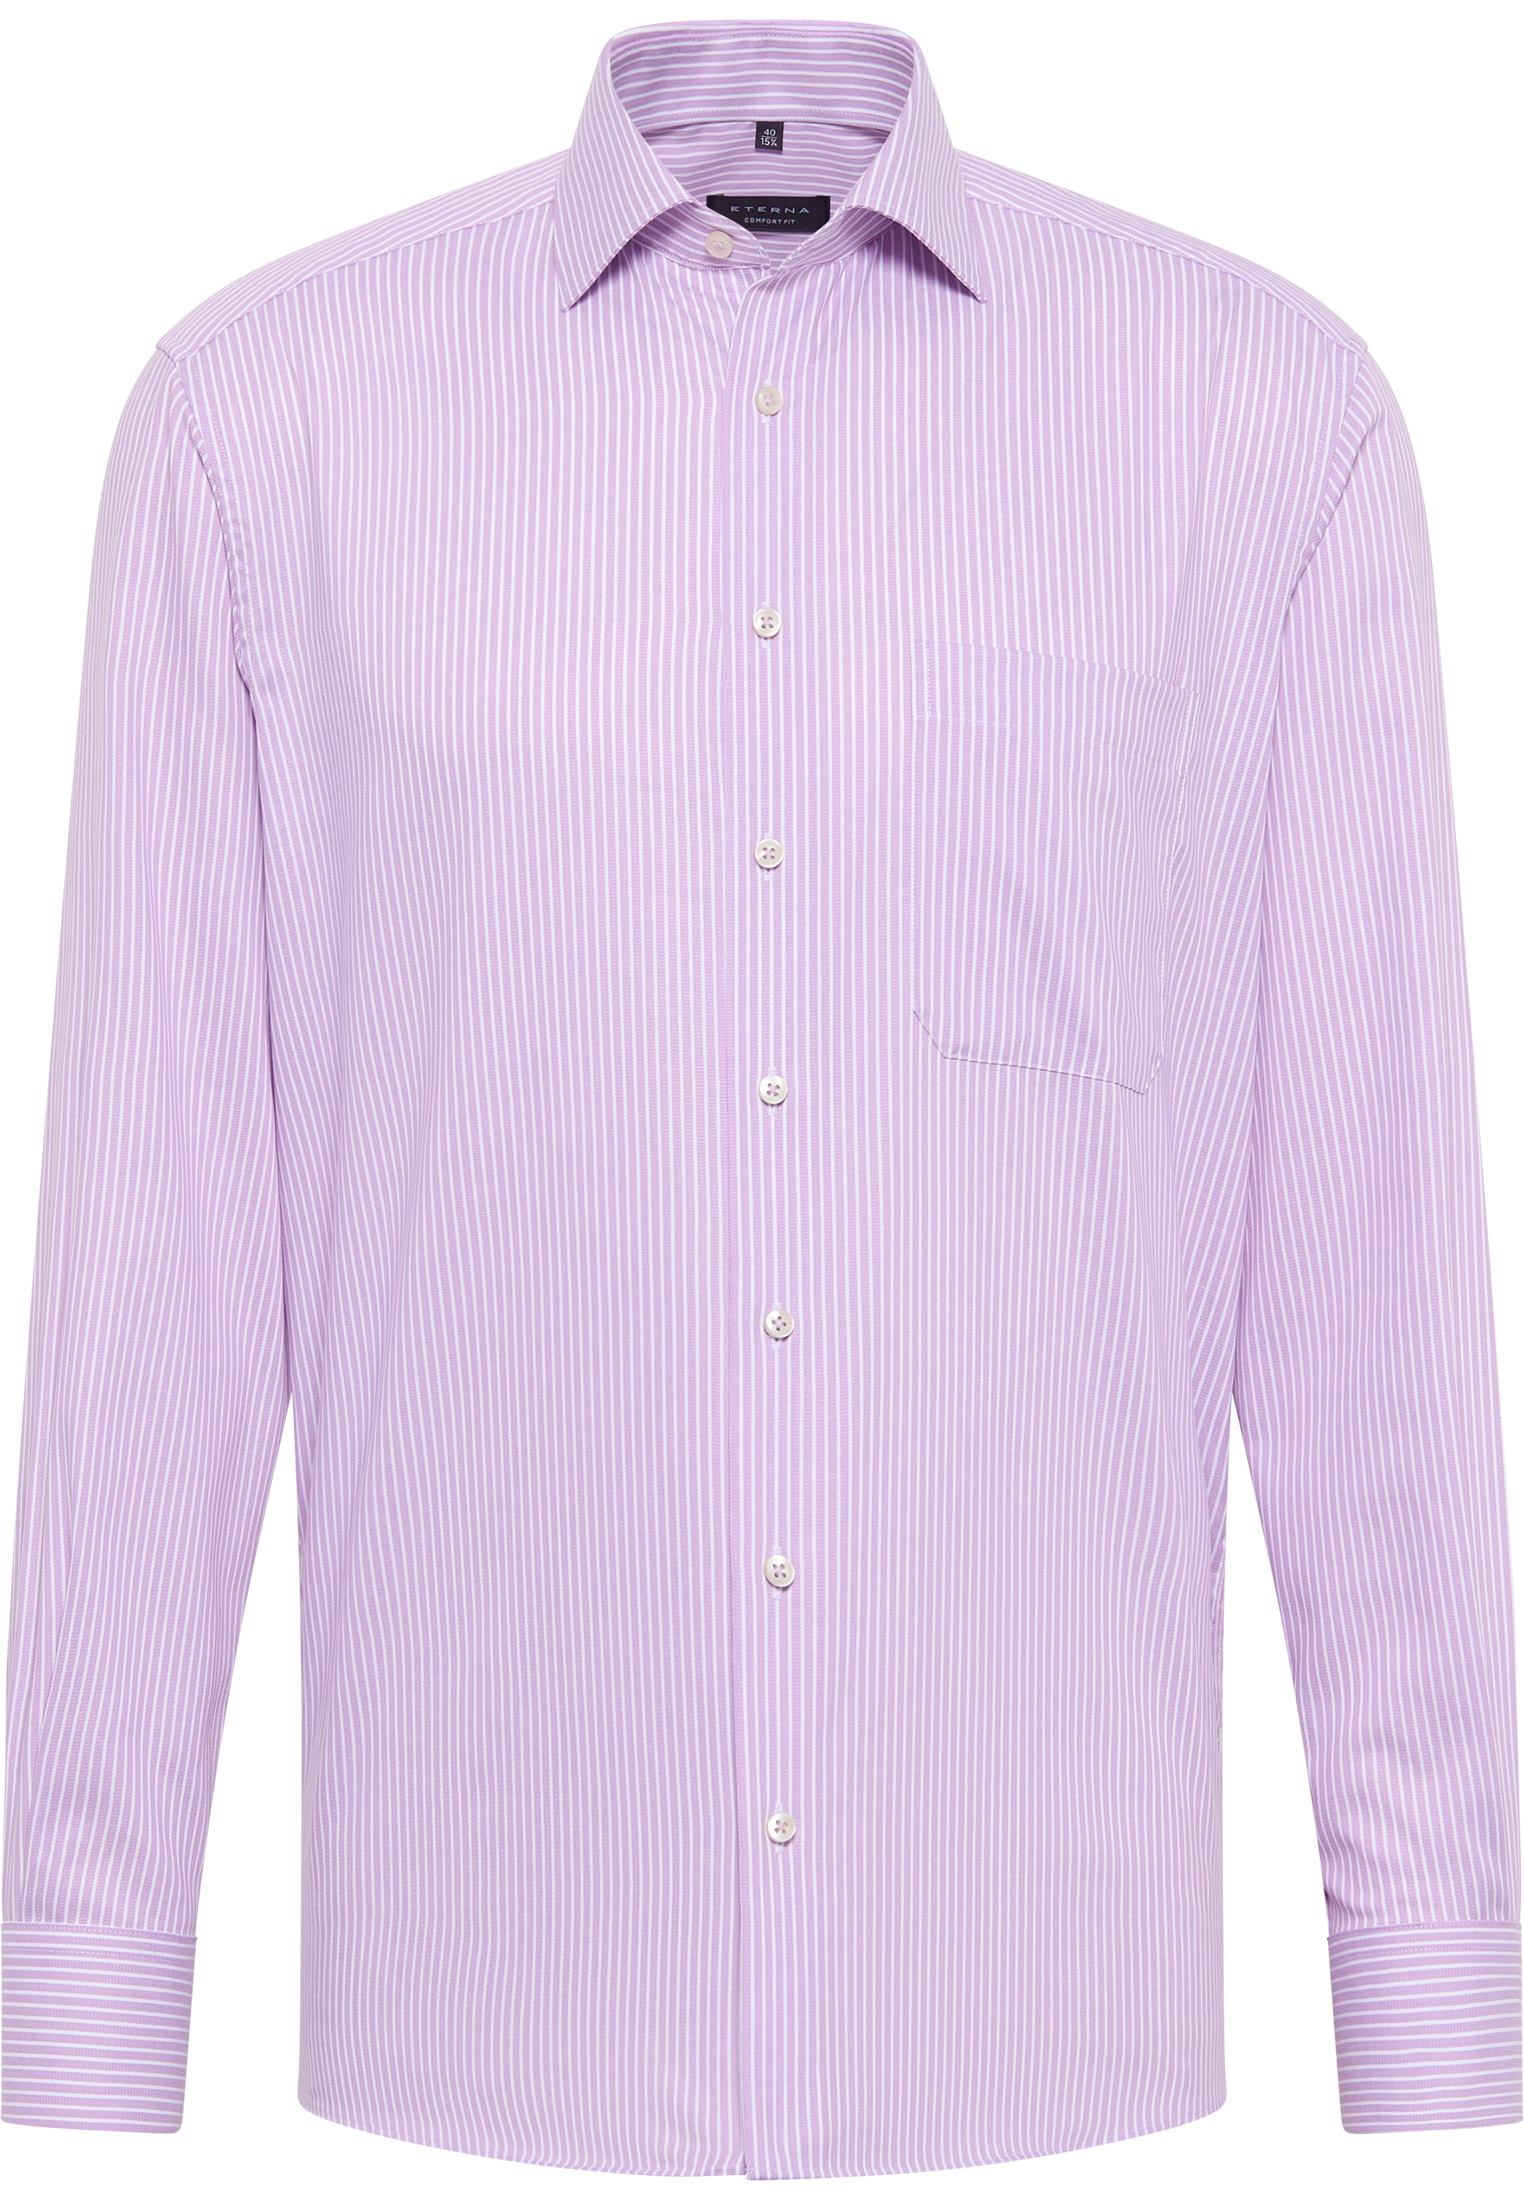 COMFORT FIT Hemd in violett gestreift